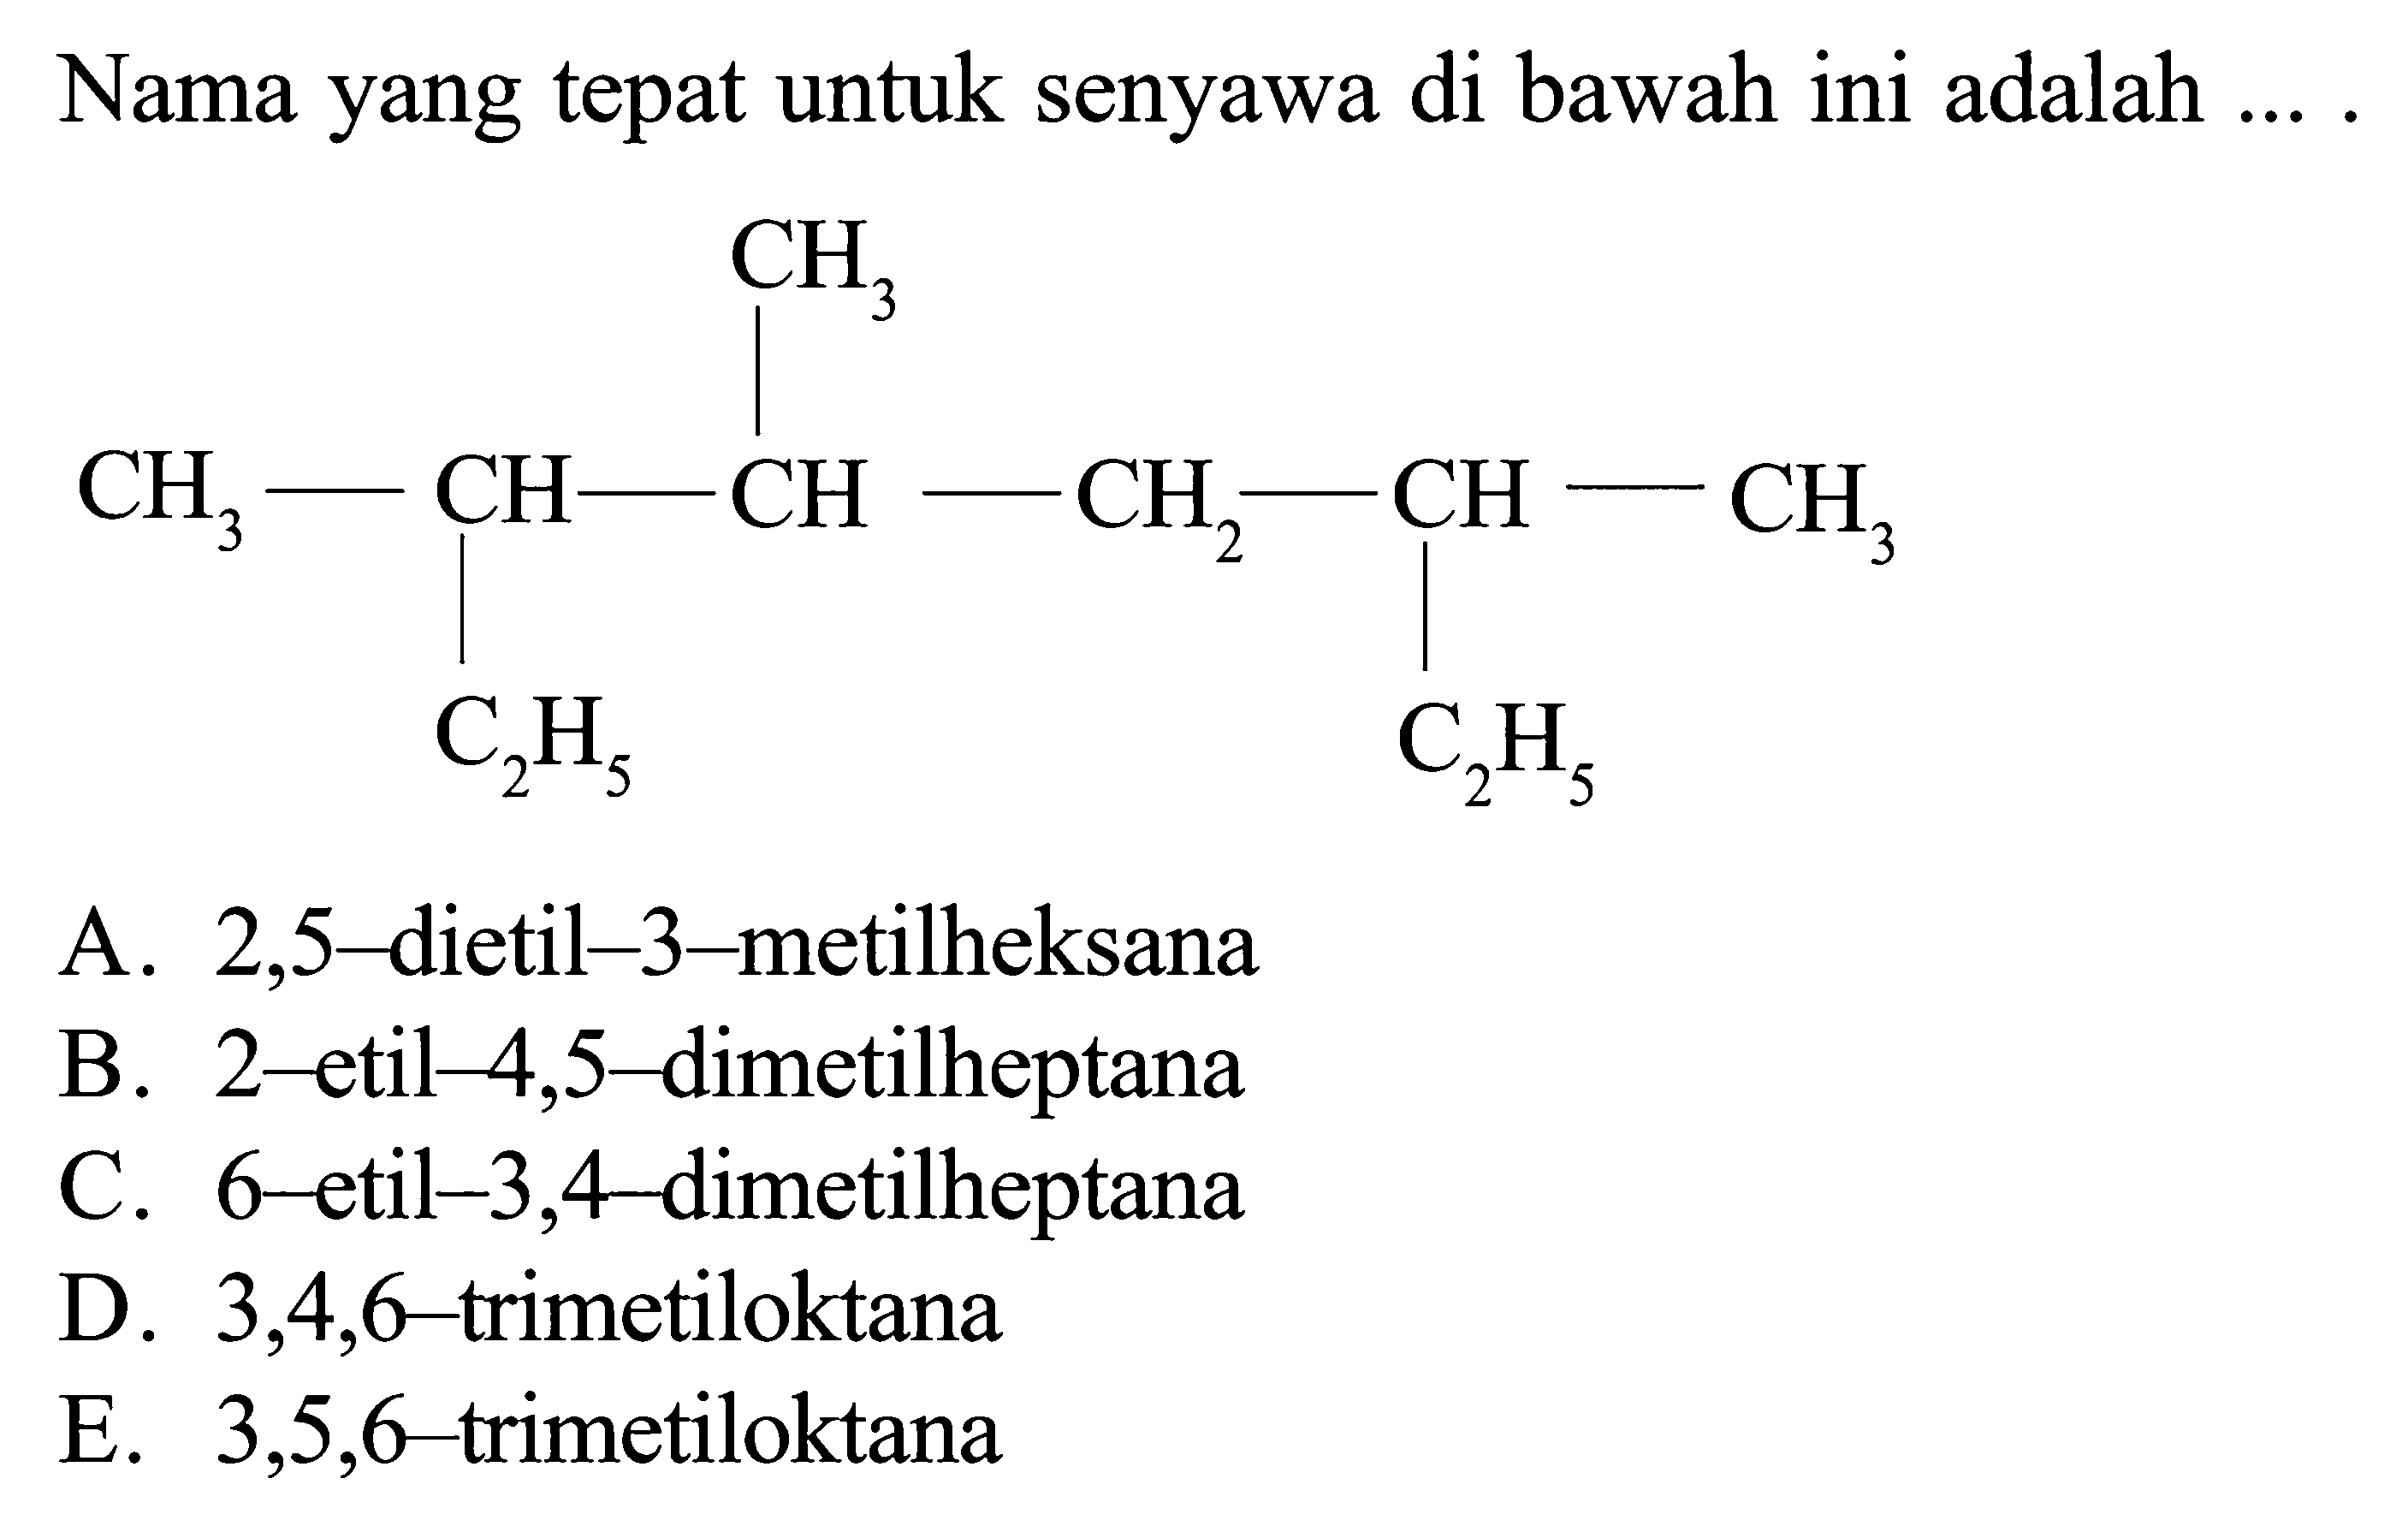 Nama yang tepat untuk senyawa di bawah ini adalah .... CH3 CH3 - CH - CH - CH2 - CH - CH3 C2H5 C2H5